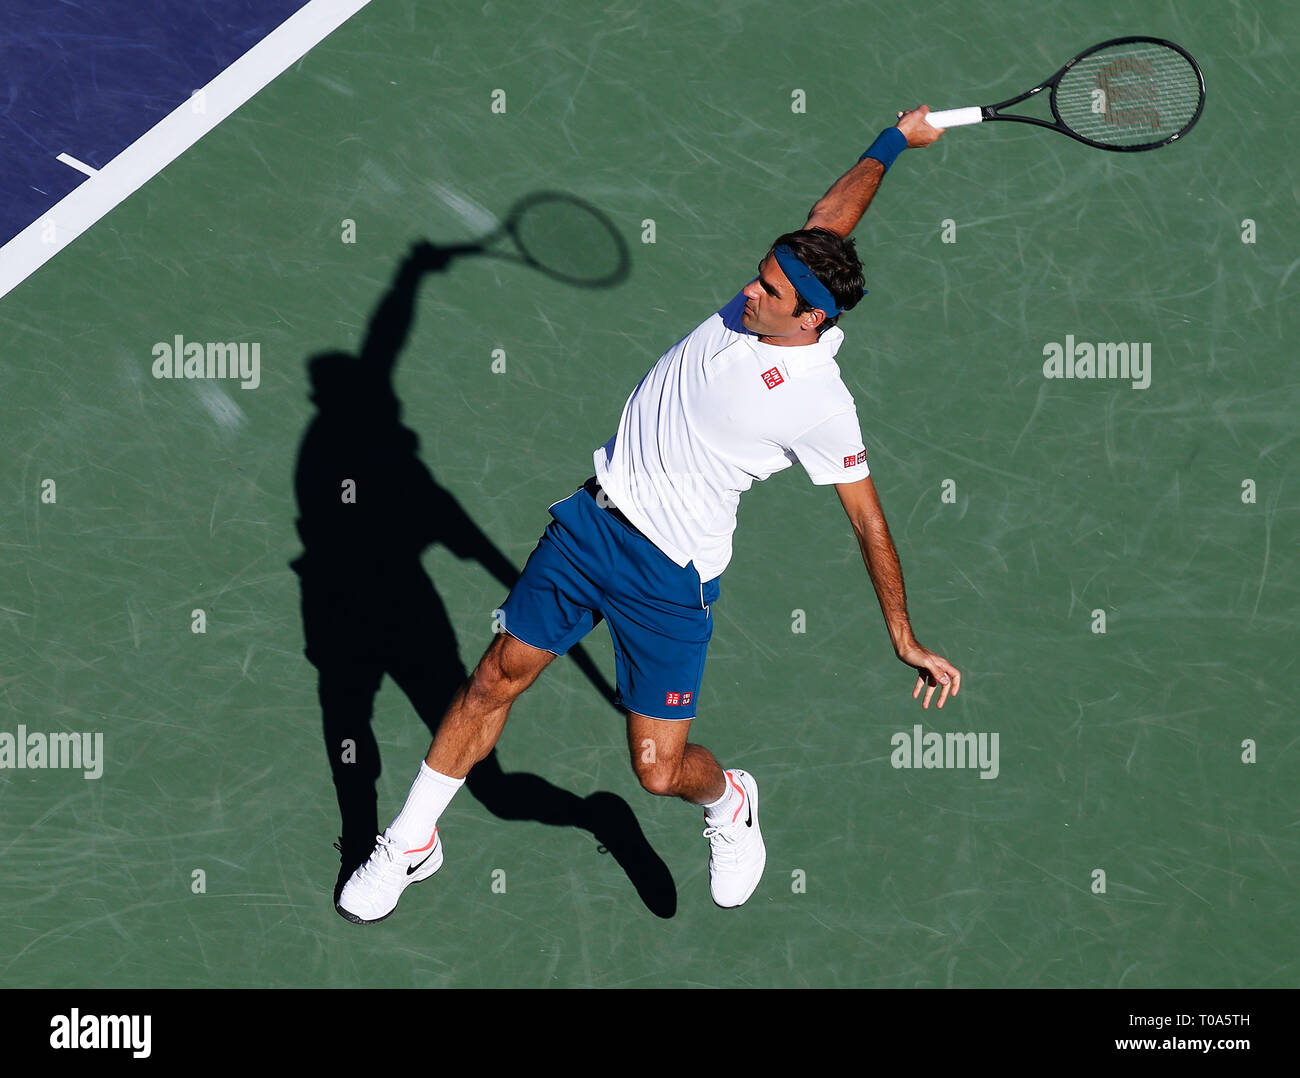 Roger Federer (sui) devuelve un tiro contra Dominic Thiem (AUT) durante el  partido de finales individuales masculino en el BNP Paribas Open 2019 en el Indian  Wells Tennis Garden en Indian Wells,